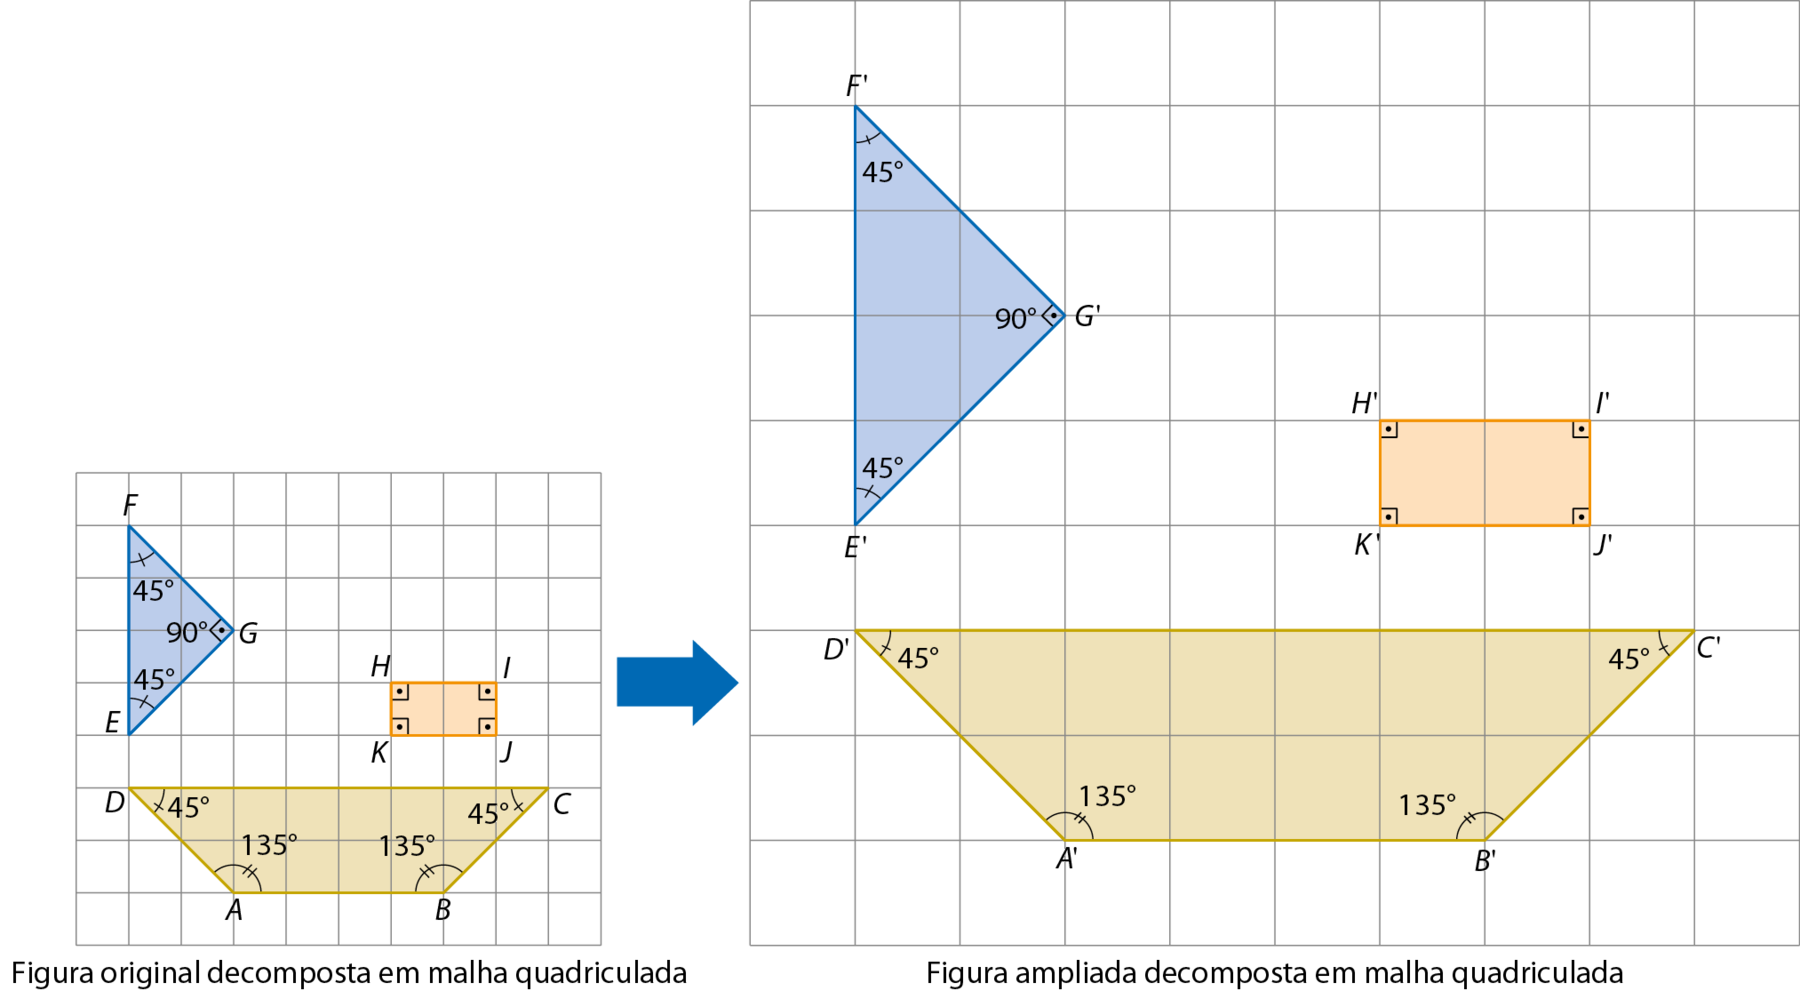 Esquema. Figura original decomposta em malha quadriculada: um trapézio marrom, um triângulo azul e um retângulo alaranjado que formavam anteriormente uma figura que se parecia com um barco, Na figura, os vértices do trapézio estão indicados pelos pontos A, B, C e D. O lado AB é a base menor, está abaixo e mede 4 unidades. O lado DC é a base maior, está acima e mede 8 unidades e a sua altura corresponde à duas unidades. Os ângulos nos vértices A e B medem cada um 135 graus. Os ângulos nos vértices C e D medem, cada um, 45 graus. Os vértices do triângulo estão indicados pelos pontos E, F e G. Considerando o lado EF como base, está na vertical e mede 4 unidades. O lado EG corresponde a medida de comprimento de duas diagonais do quadradinho. O lado FG também corresponde a medida de comprimento de duas diagonais do quadradinho. Os ângulos nos vértices E e F medem cada um 45 graus. O ângulo no vértice G mede  90 graus. Os vértices do retângulo estão indicados pelos pontos H, I, J e K. Os lados KJ e HI estão na horizontal e medem, cada um, 2 unidades. Os lados HK e IJ estão na vertical e medem, cada um, uma unidade. Todos os ângulos internos são retos. Seta azul para a direita indicando a Figura ampliada decomposta em malha quadriculada. Mesmos polígonos da figura anterior, agora representados na malha ampliada. Os pontos A linha, B linha, C linha, D linha e E linha, formam o trapézio e estão, relativamente nas mesmas posições dos pontos A, B, C, D e E. respectivamente. Os pontos E linha, F linha e G linha, formam o triângulo e estão, relativamente nas mesmas posições dos pontos E, F e G, respectivamente. Os pontos H linha, I linha, J linha e K linha, formam o retângulo e estão, relativamente nas mesmas posições dos pontos H, I, J e K respectivamente.